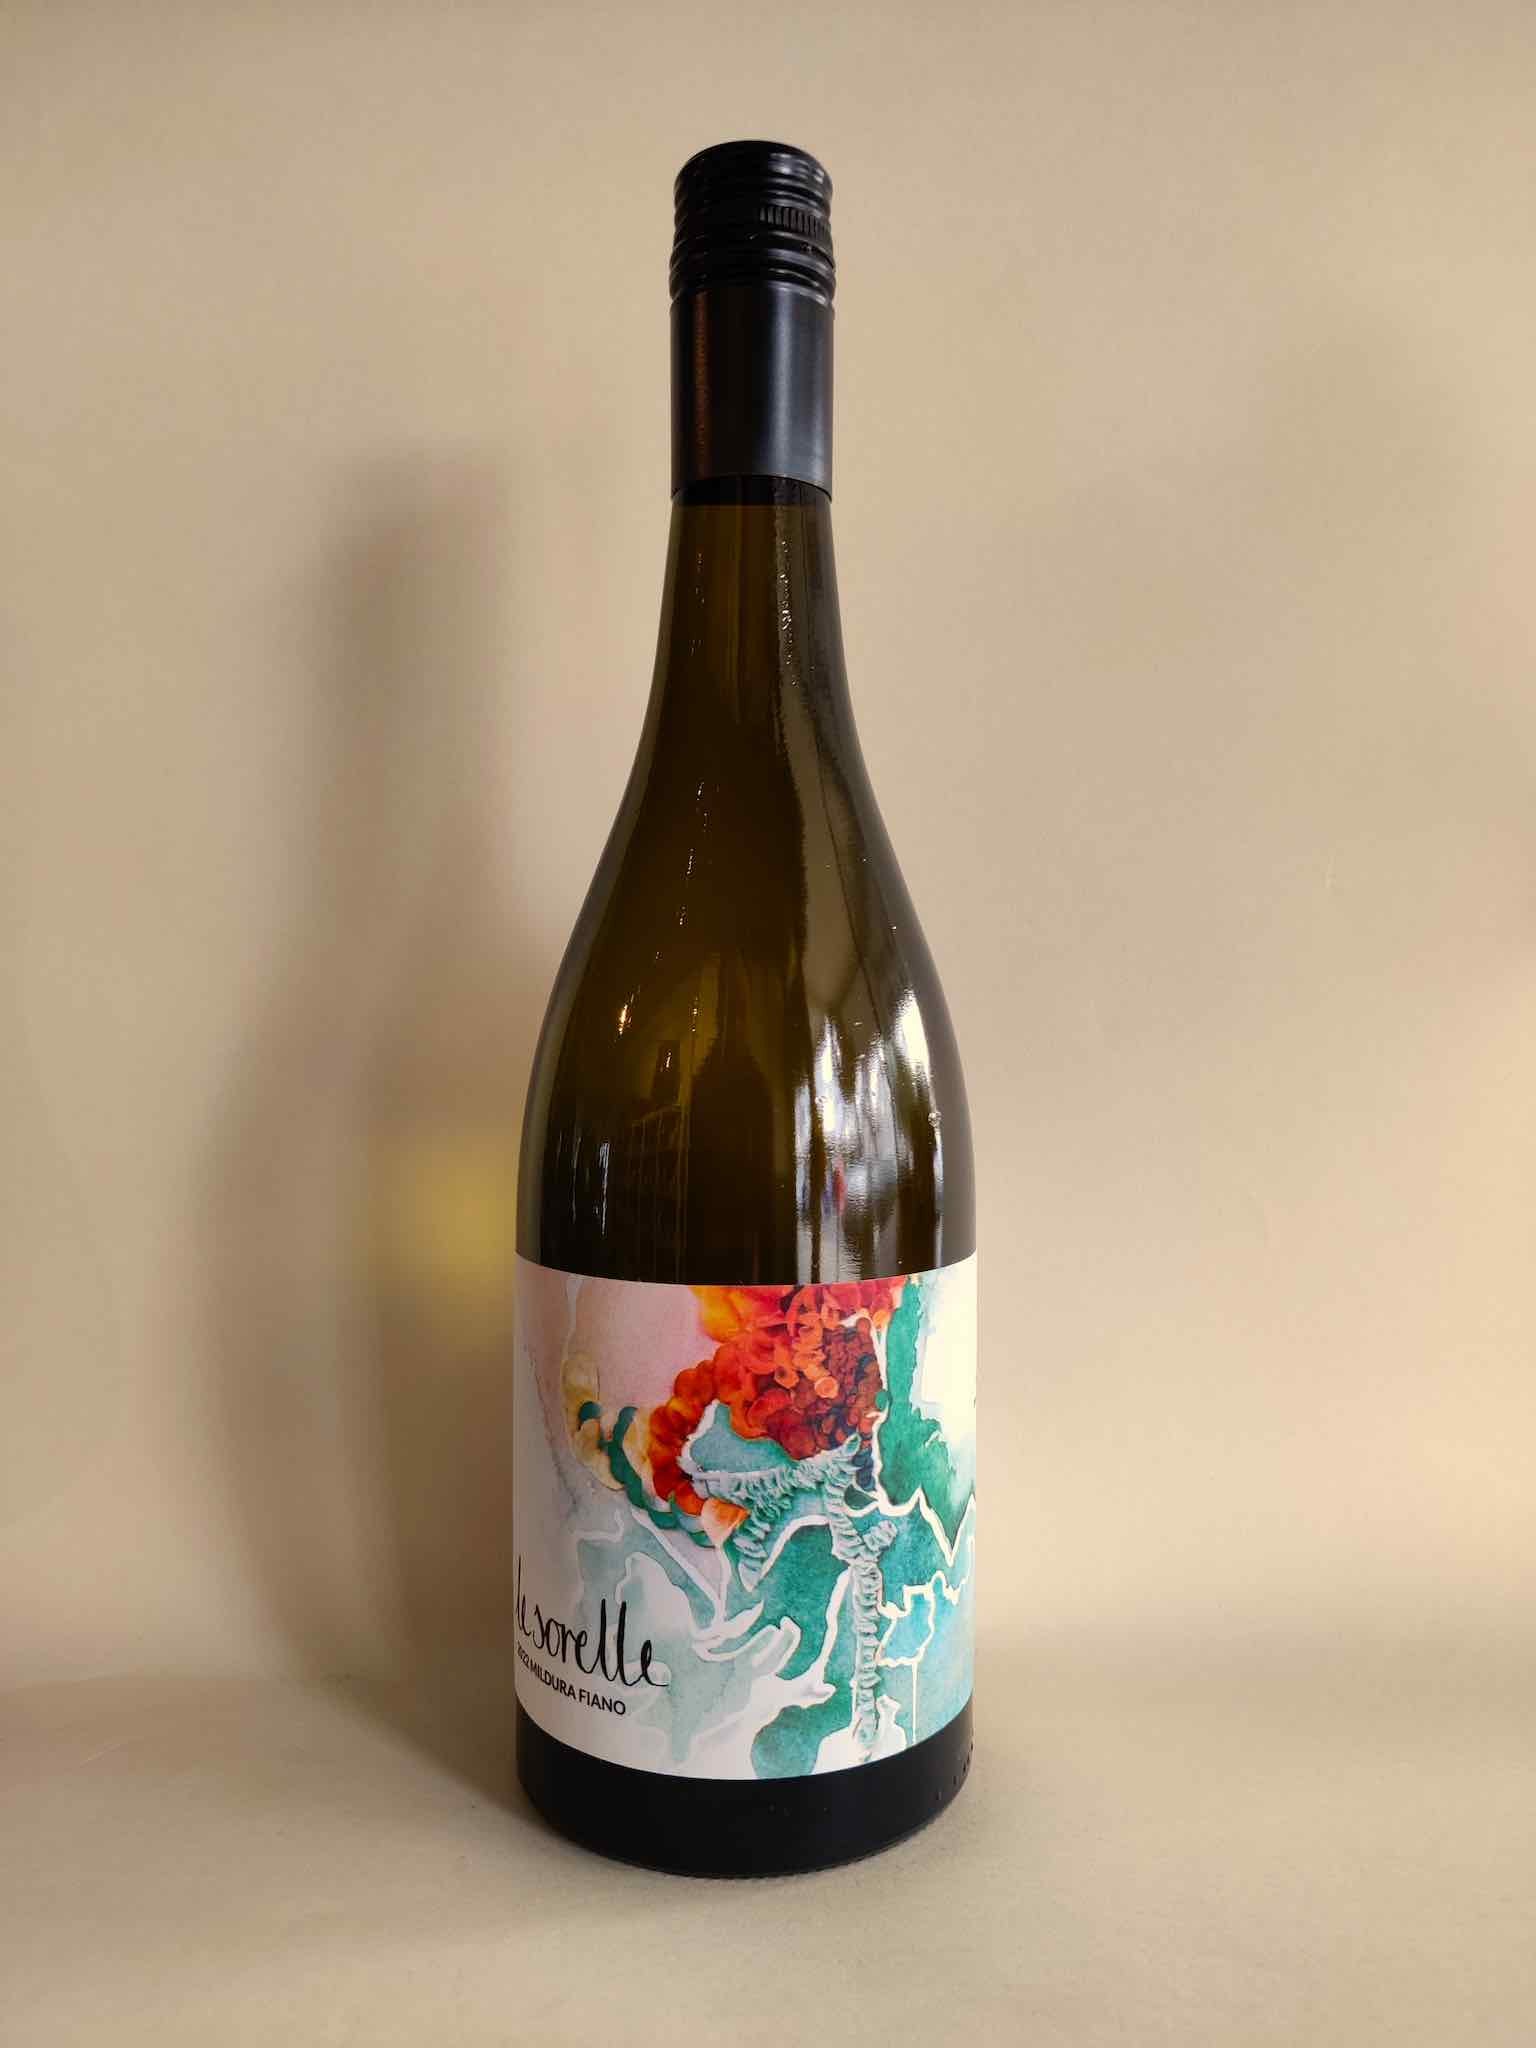 A bottle of Le Sorelle Fiano from Mildura, Victoria. 